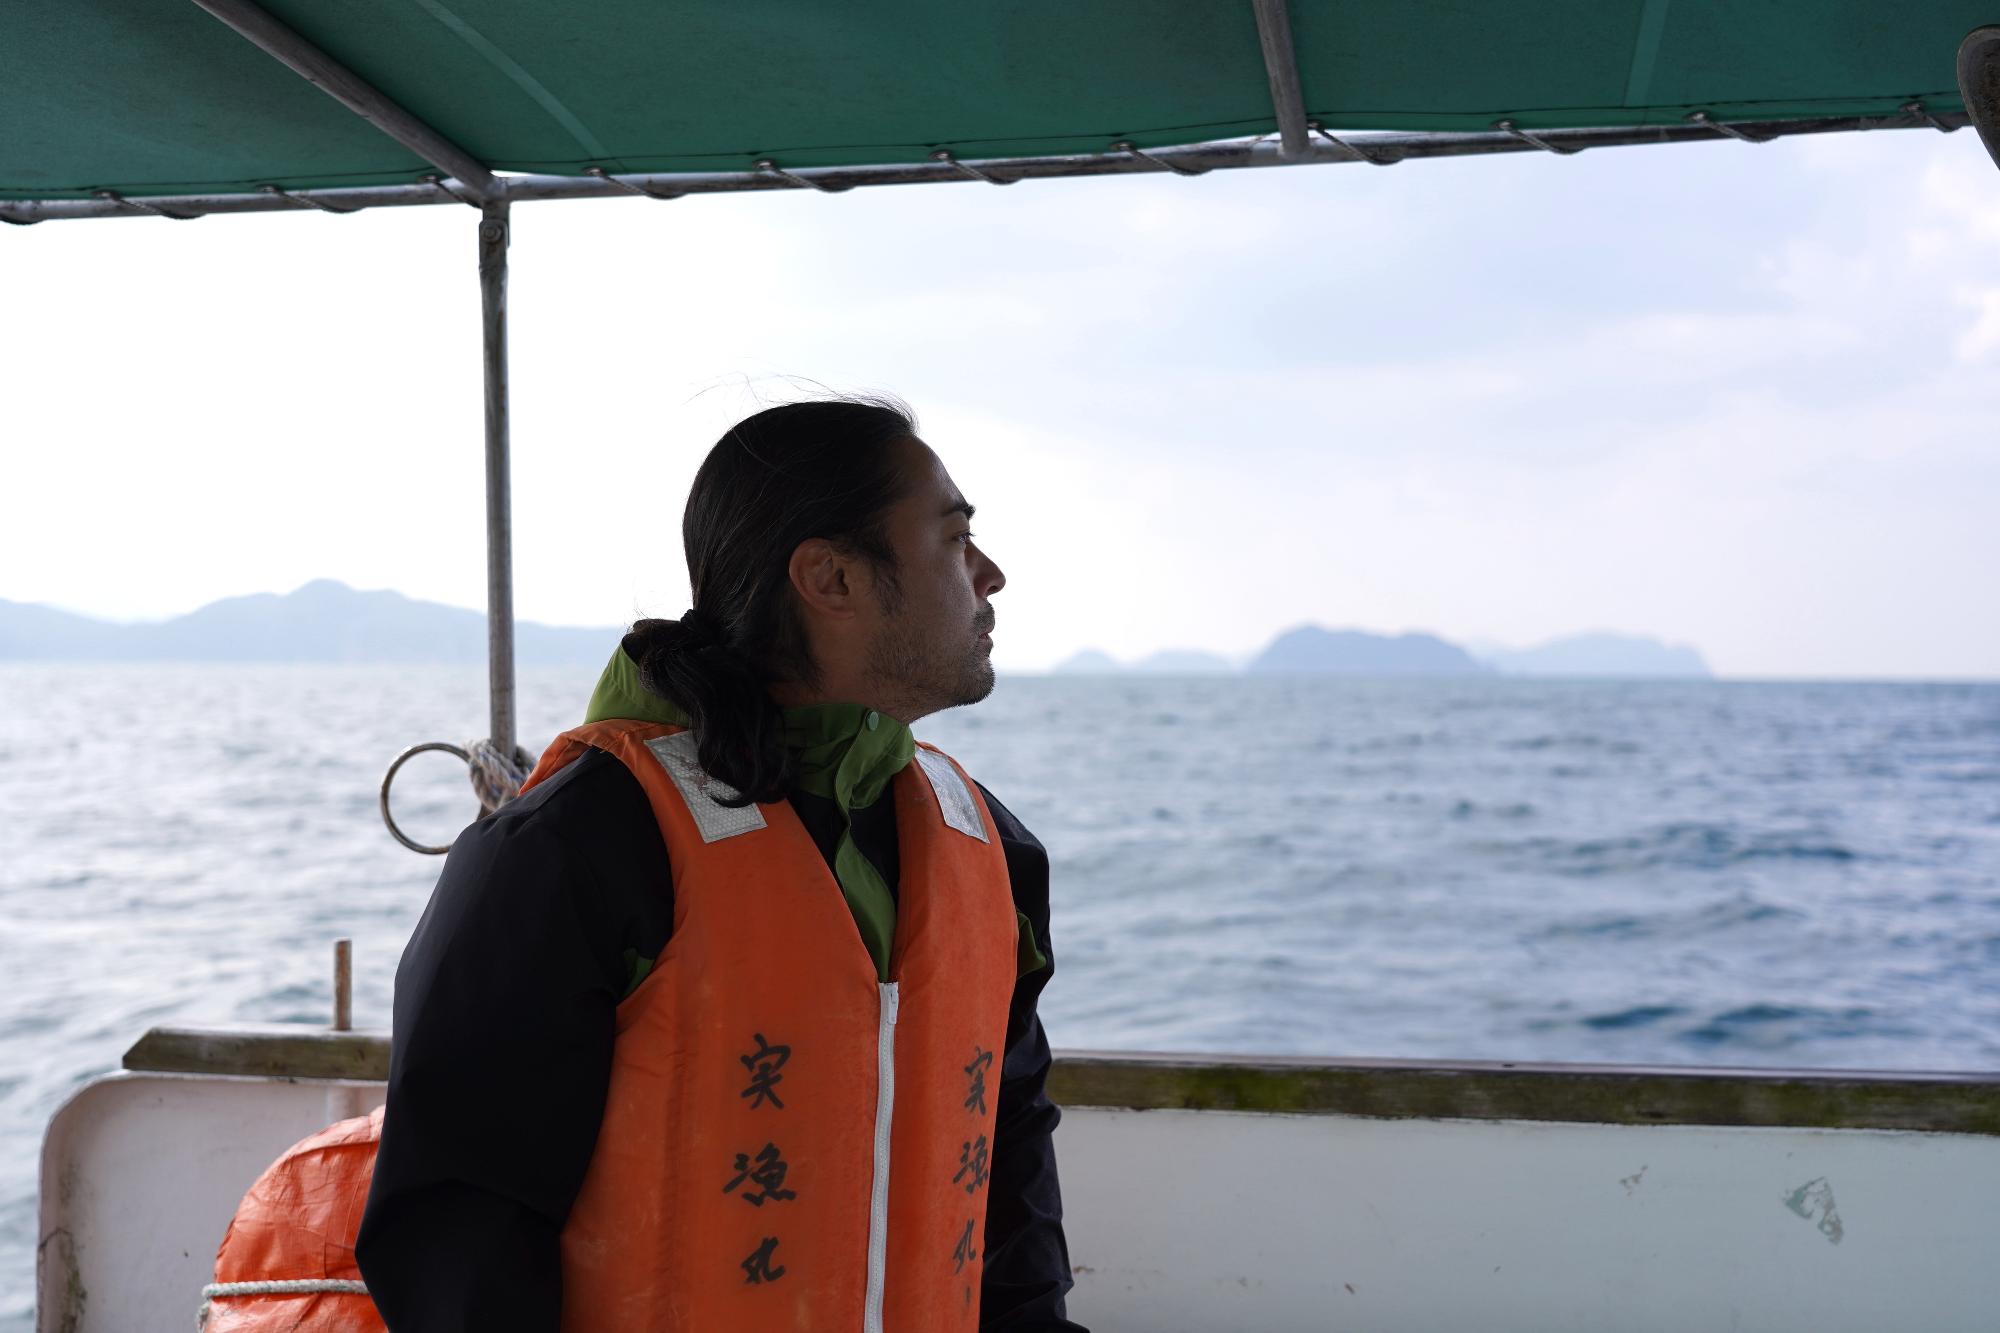 今回の目的地は山口県沖合にある島。毎回港から船で約40分かけて島へ渡る